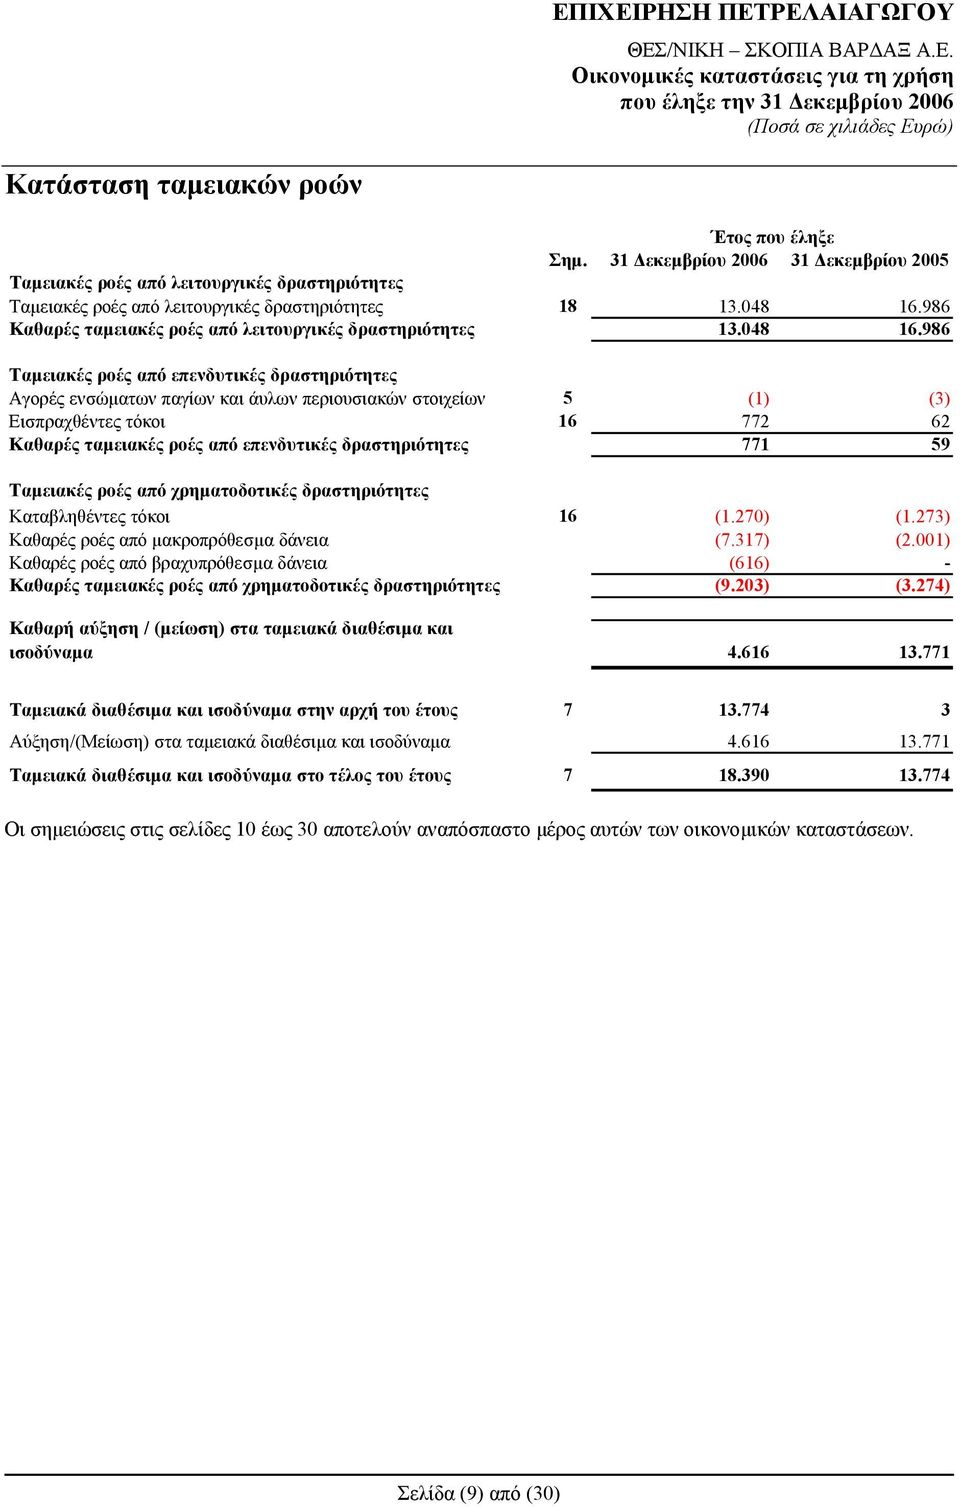 986 Ταμειακές ροές από επενδυτικές δραστηριότητες Αγορές ενσώματων παγίων και άυλων περιουσιακών στοιχείων 5 (1) (3) Εισπραχθέντες τόκοι 16 772 62 Καθαρές ταμειακές ροές από επενδυτικές